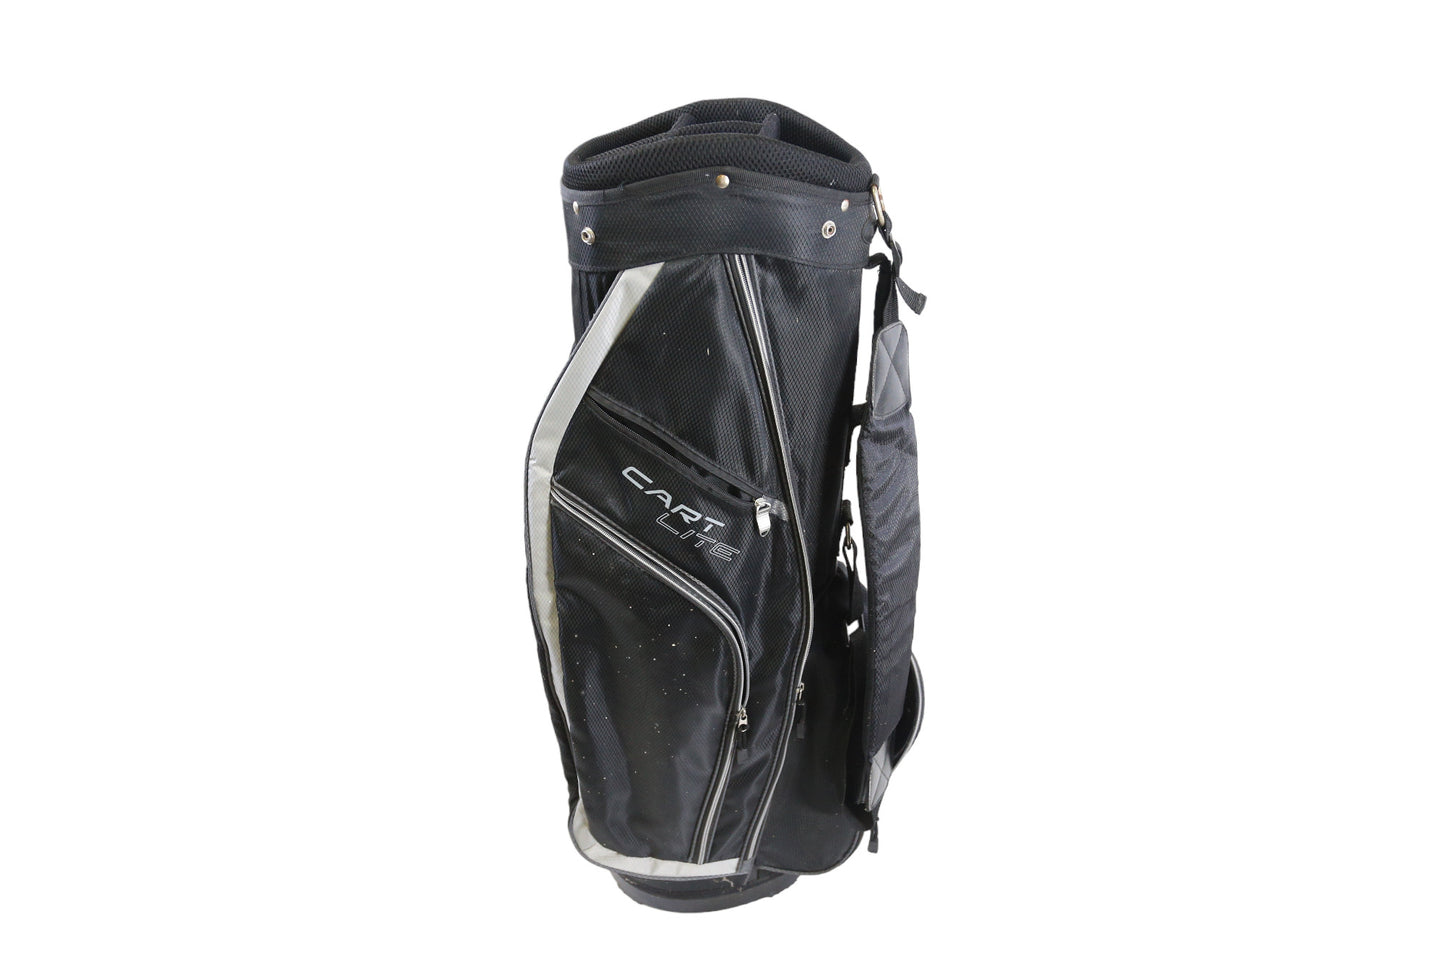 Wilson Black Cart Bag 5 Dividers 6 Pockets Shoulder Strap